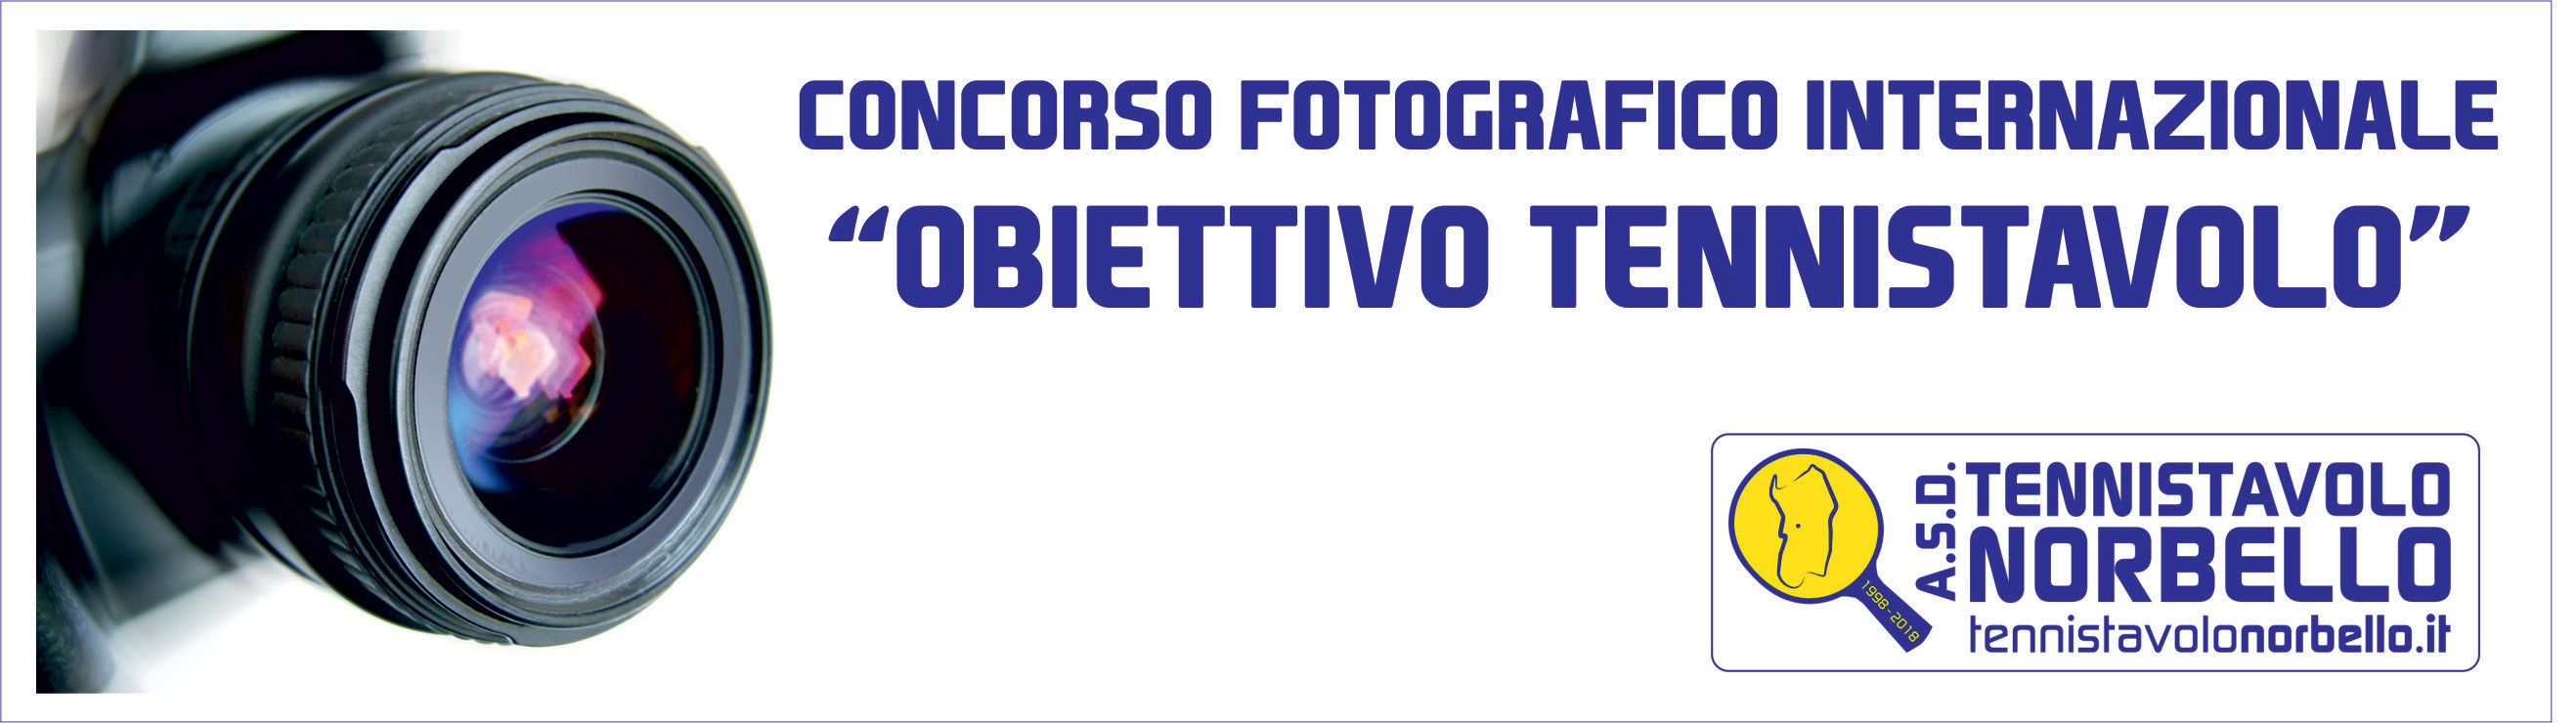 8° Concorso Fotografico Internazionale “Obiettivo Tennistavolo“ - Norbello 2018